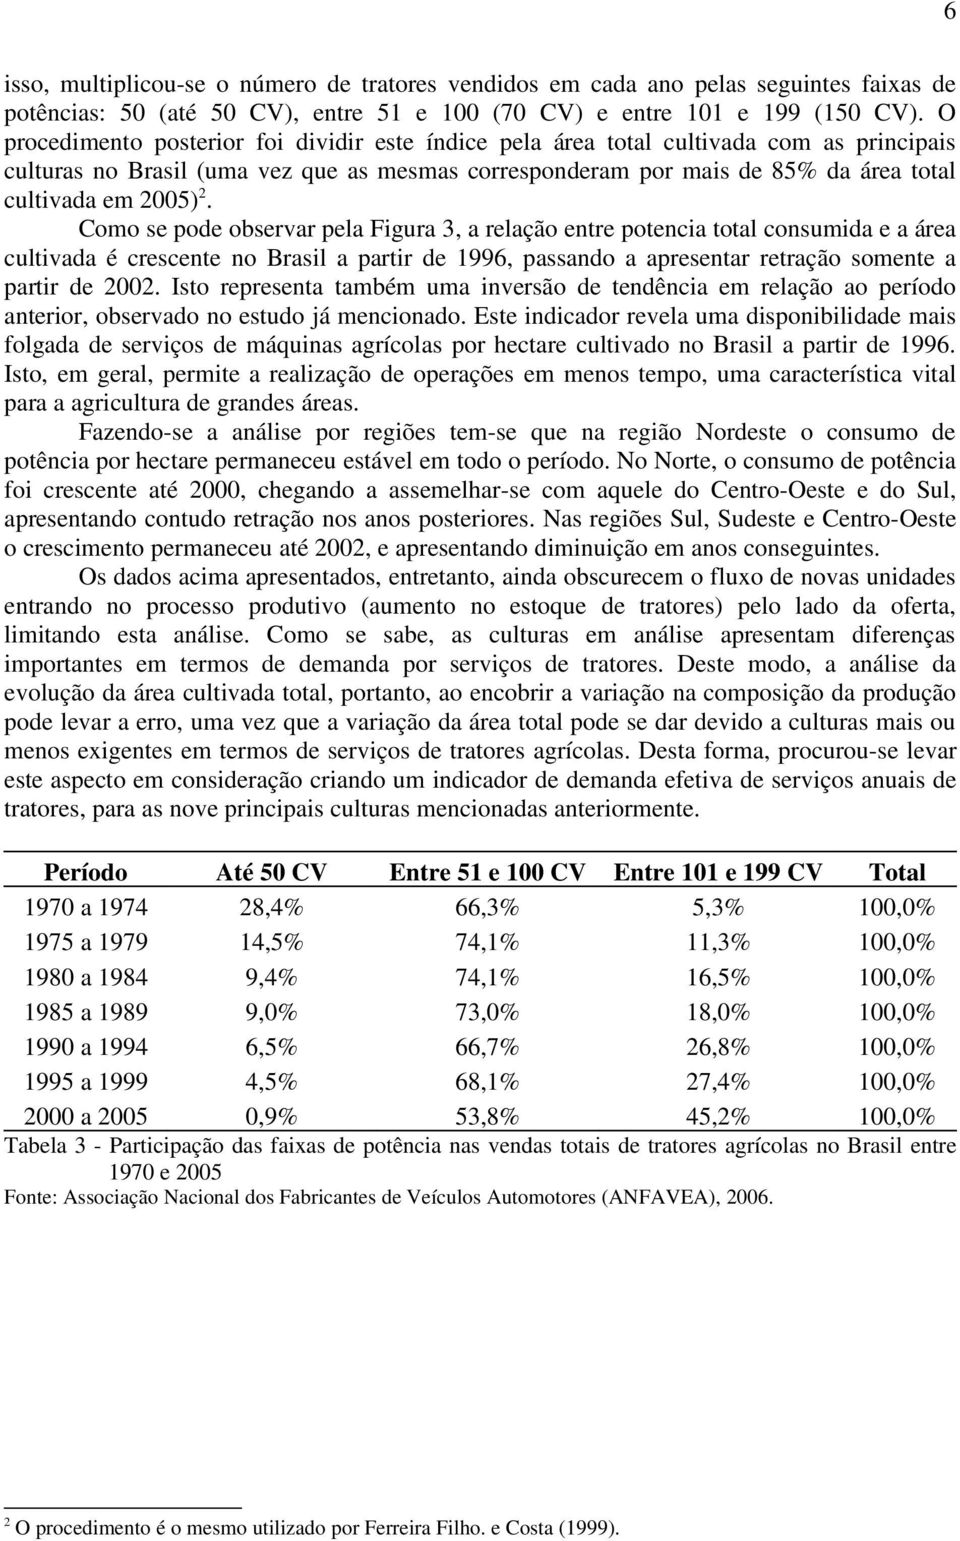 2. Como se pode observar pela Figura 3, a relação entre potencia total consumida e a área cultivada é crescente no Brasil a partir de 1996, passando a apresentar retração somente a partir de 2002.